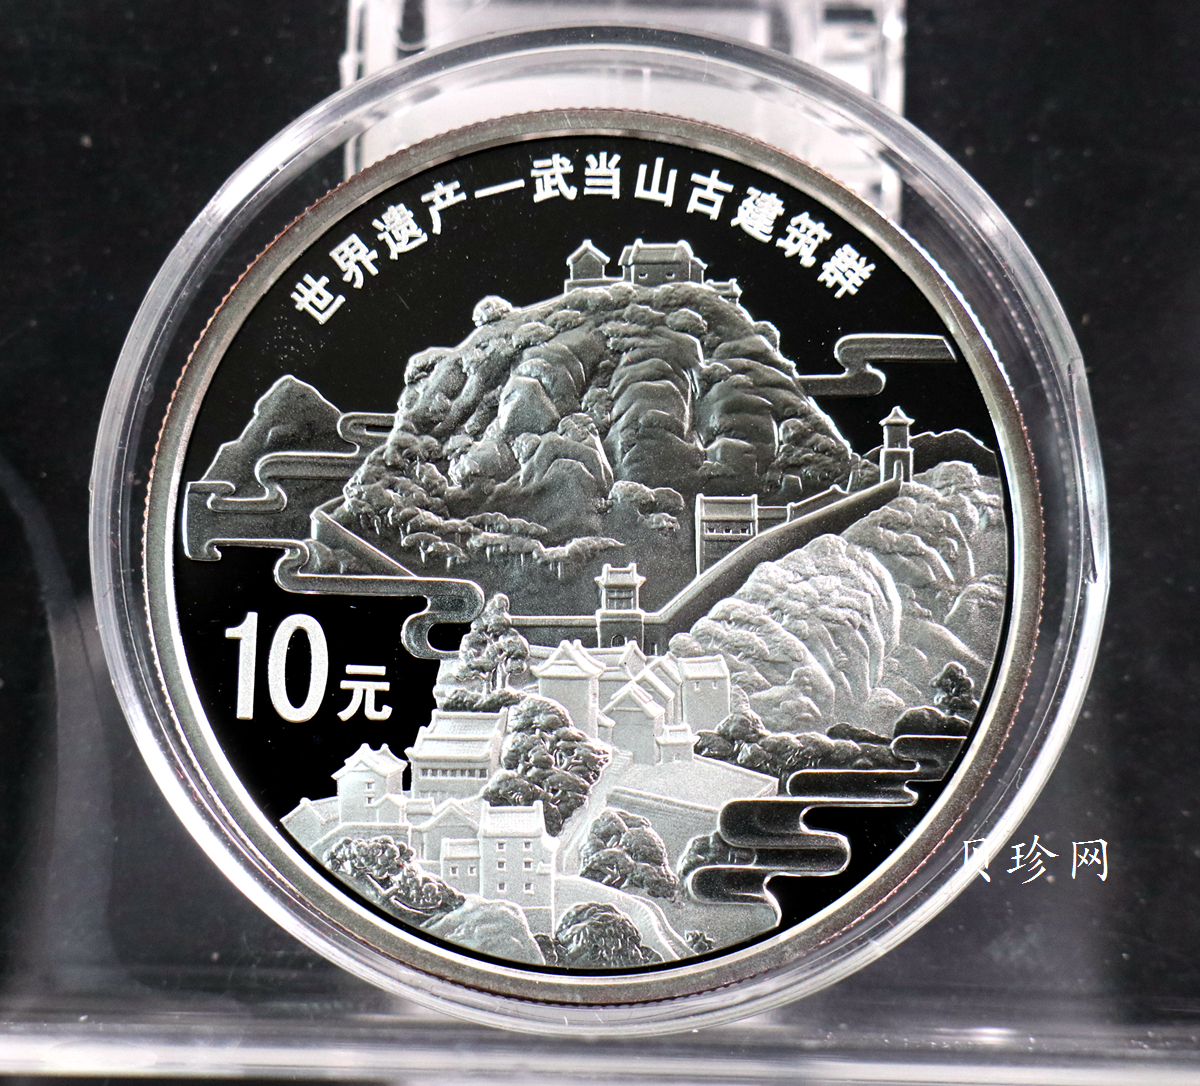 【100602】2010年世界遗产-武当山古建筑群1盎司精制银币